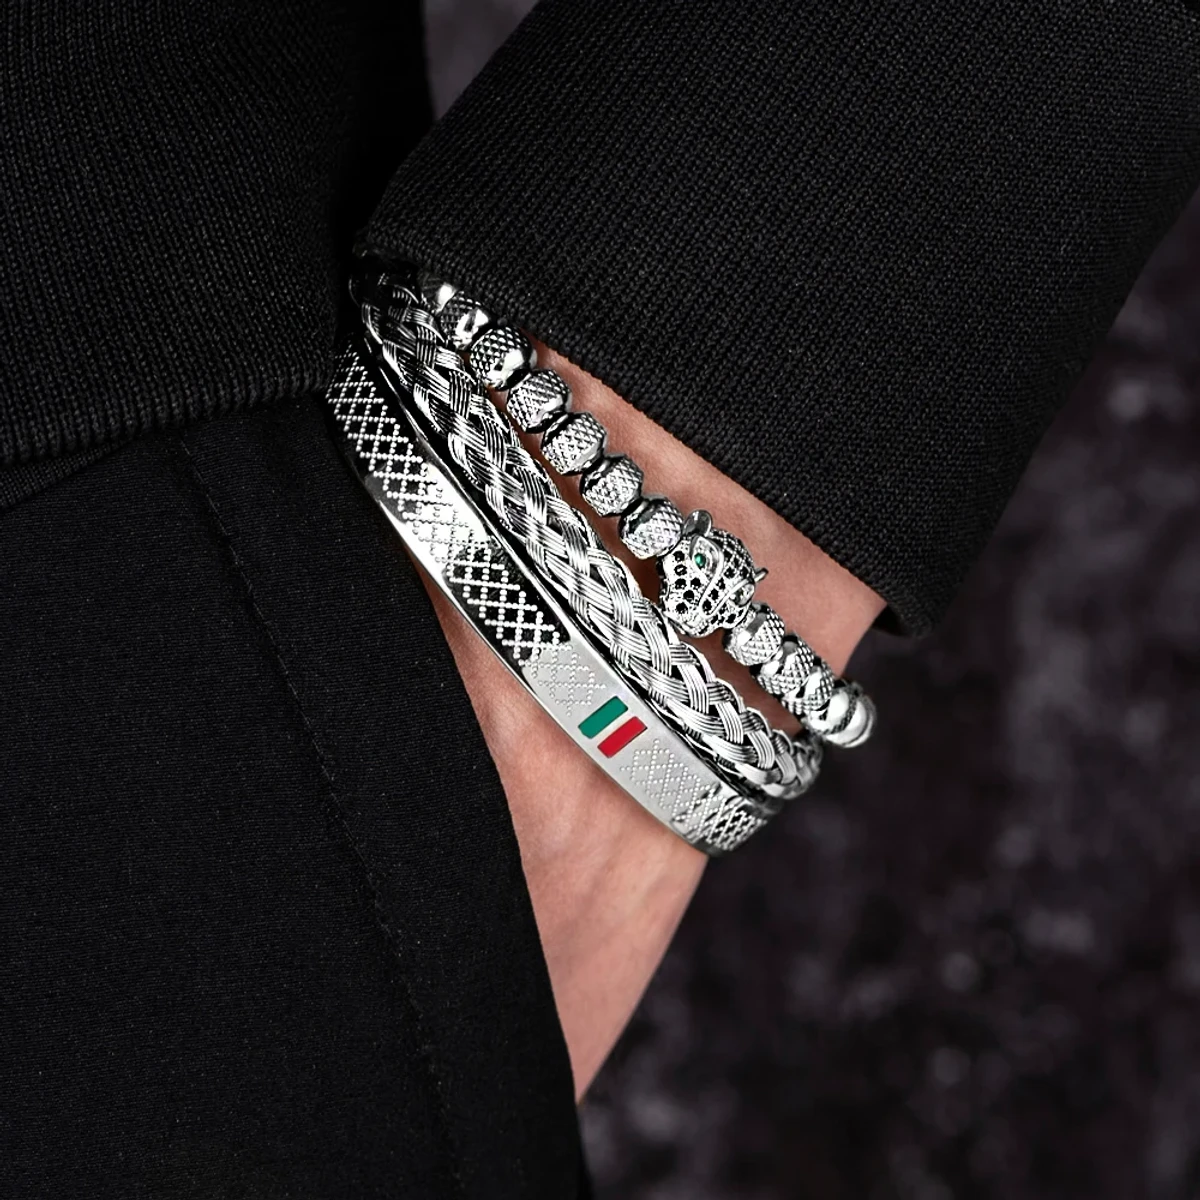 Gucci Stainless Steel Bracelet For Men